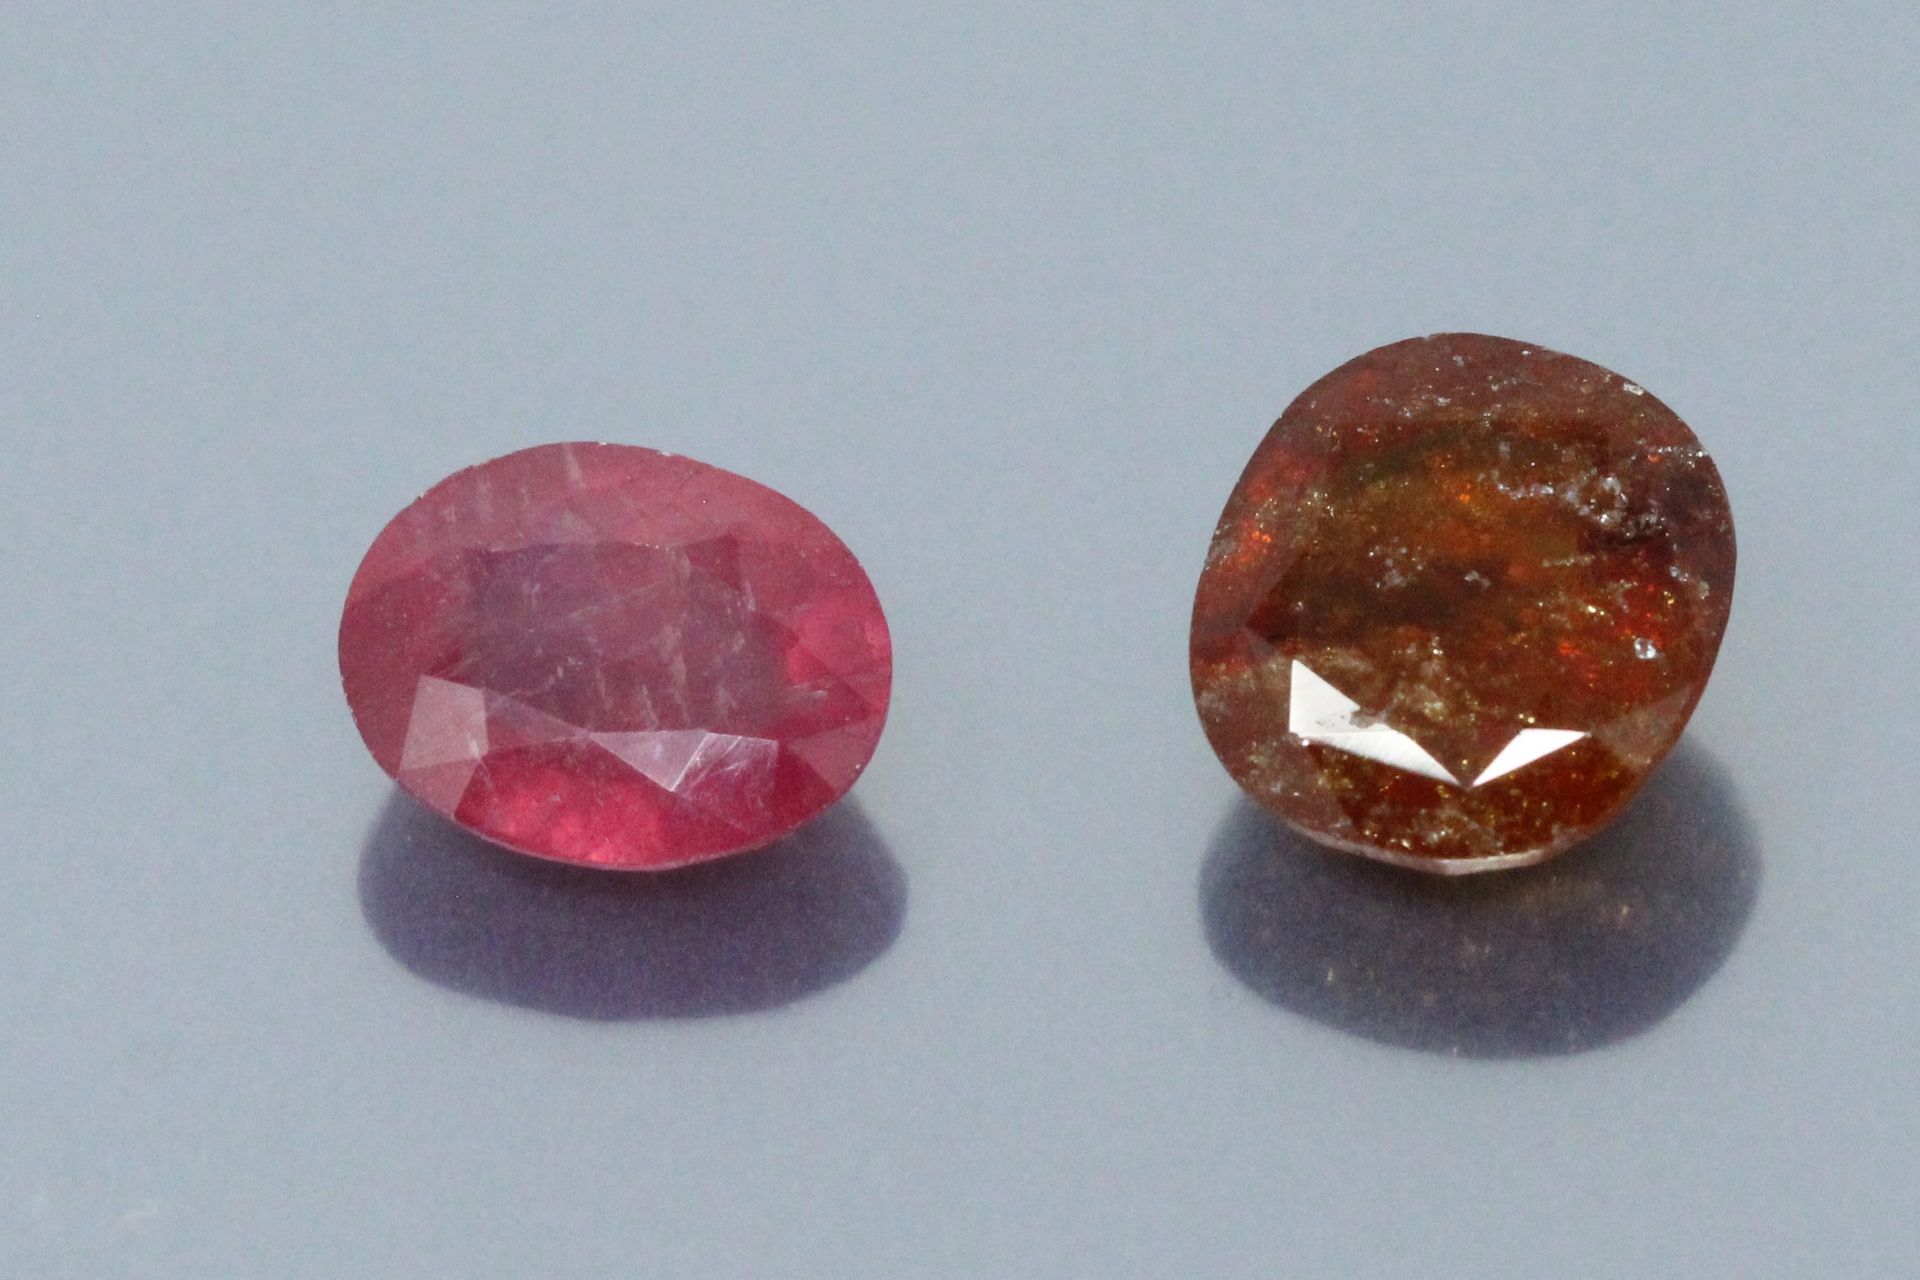 Null 本场拍卖会的两块纸上石头包括:

- 一颗椭圆形的红宝石，GJSPC的报告显示为 "玻璃填充"。重量：4.47克拉。

- 一颗垫状石榴石，有GJSP&hellip;